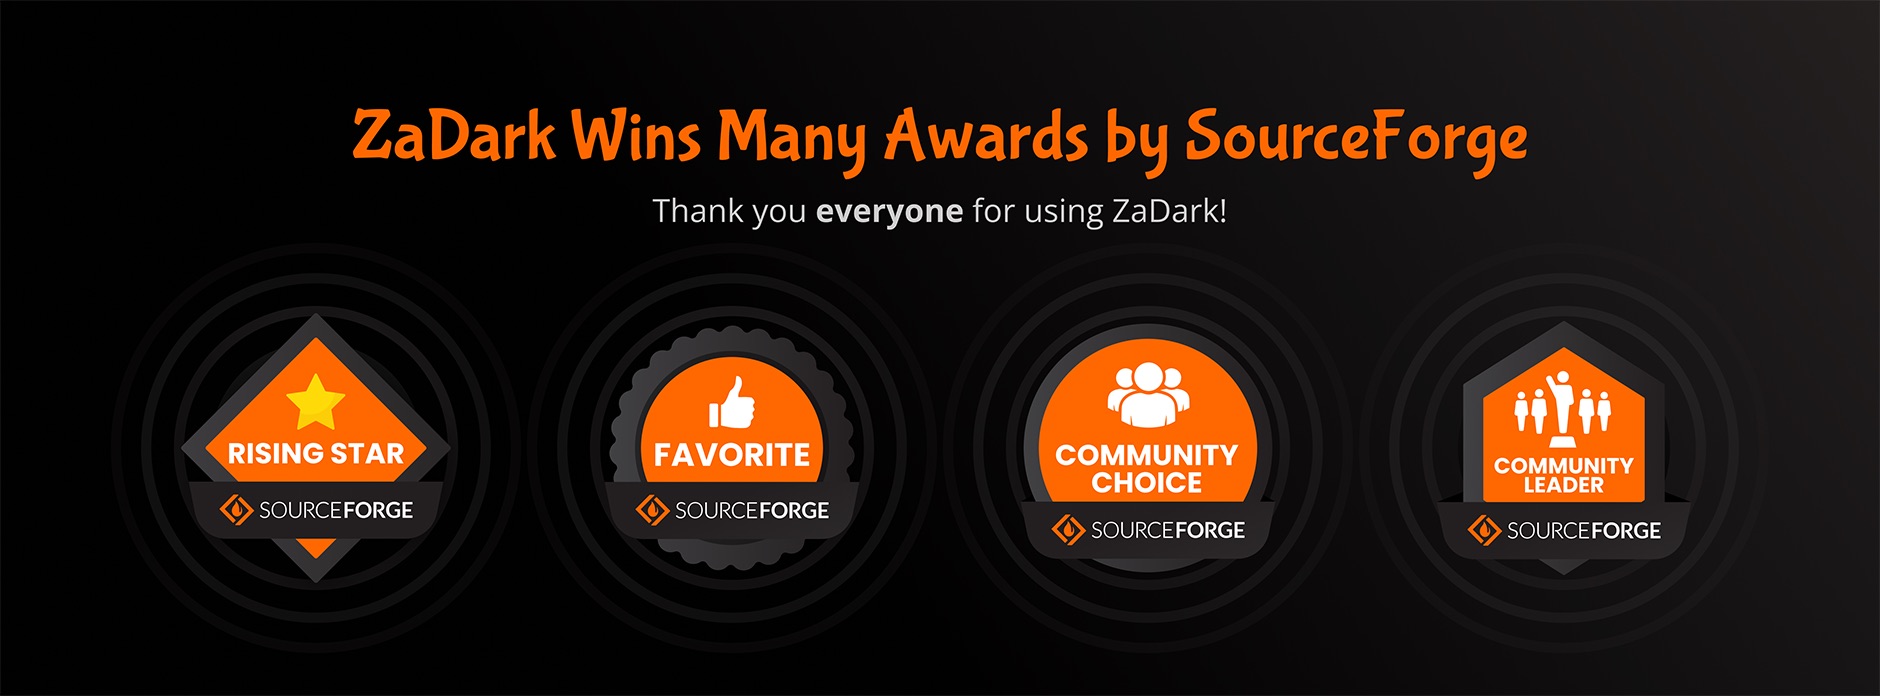 ZaDark Wins Many Awards by SourceForge